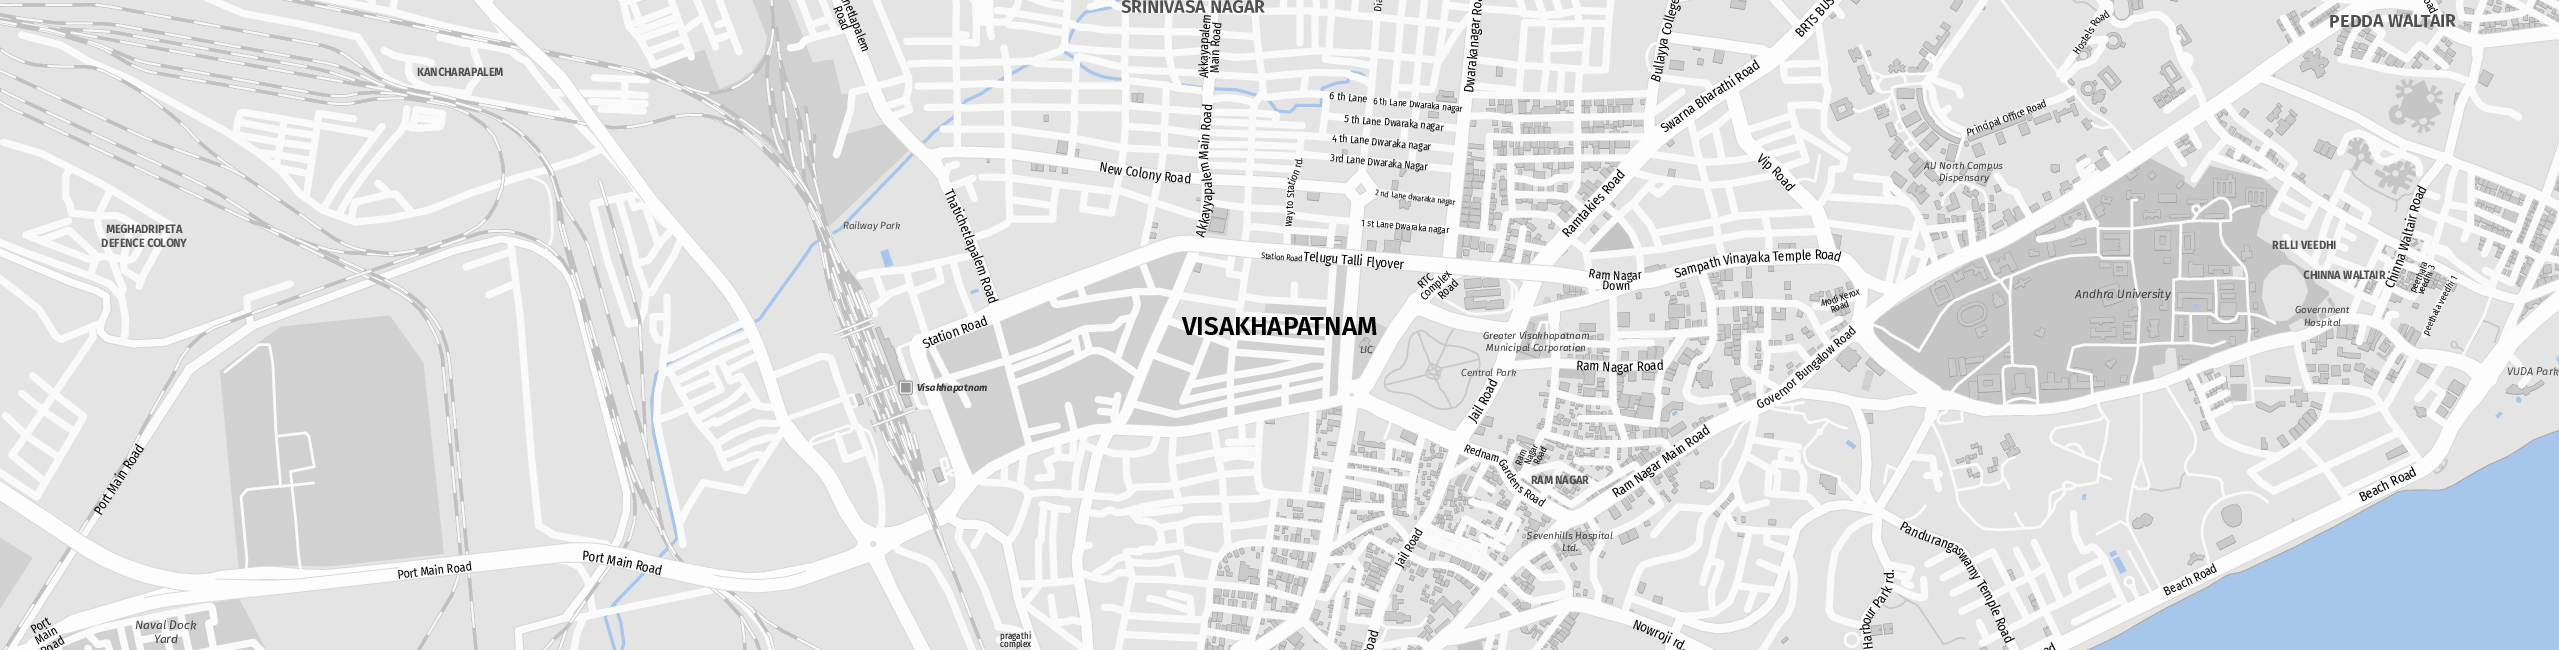 Stadtplan Visakhapatnam zum Downloaden.